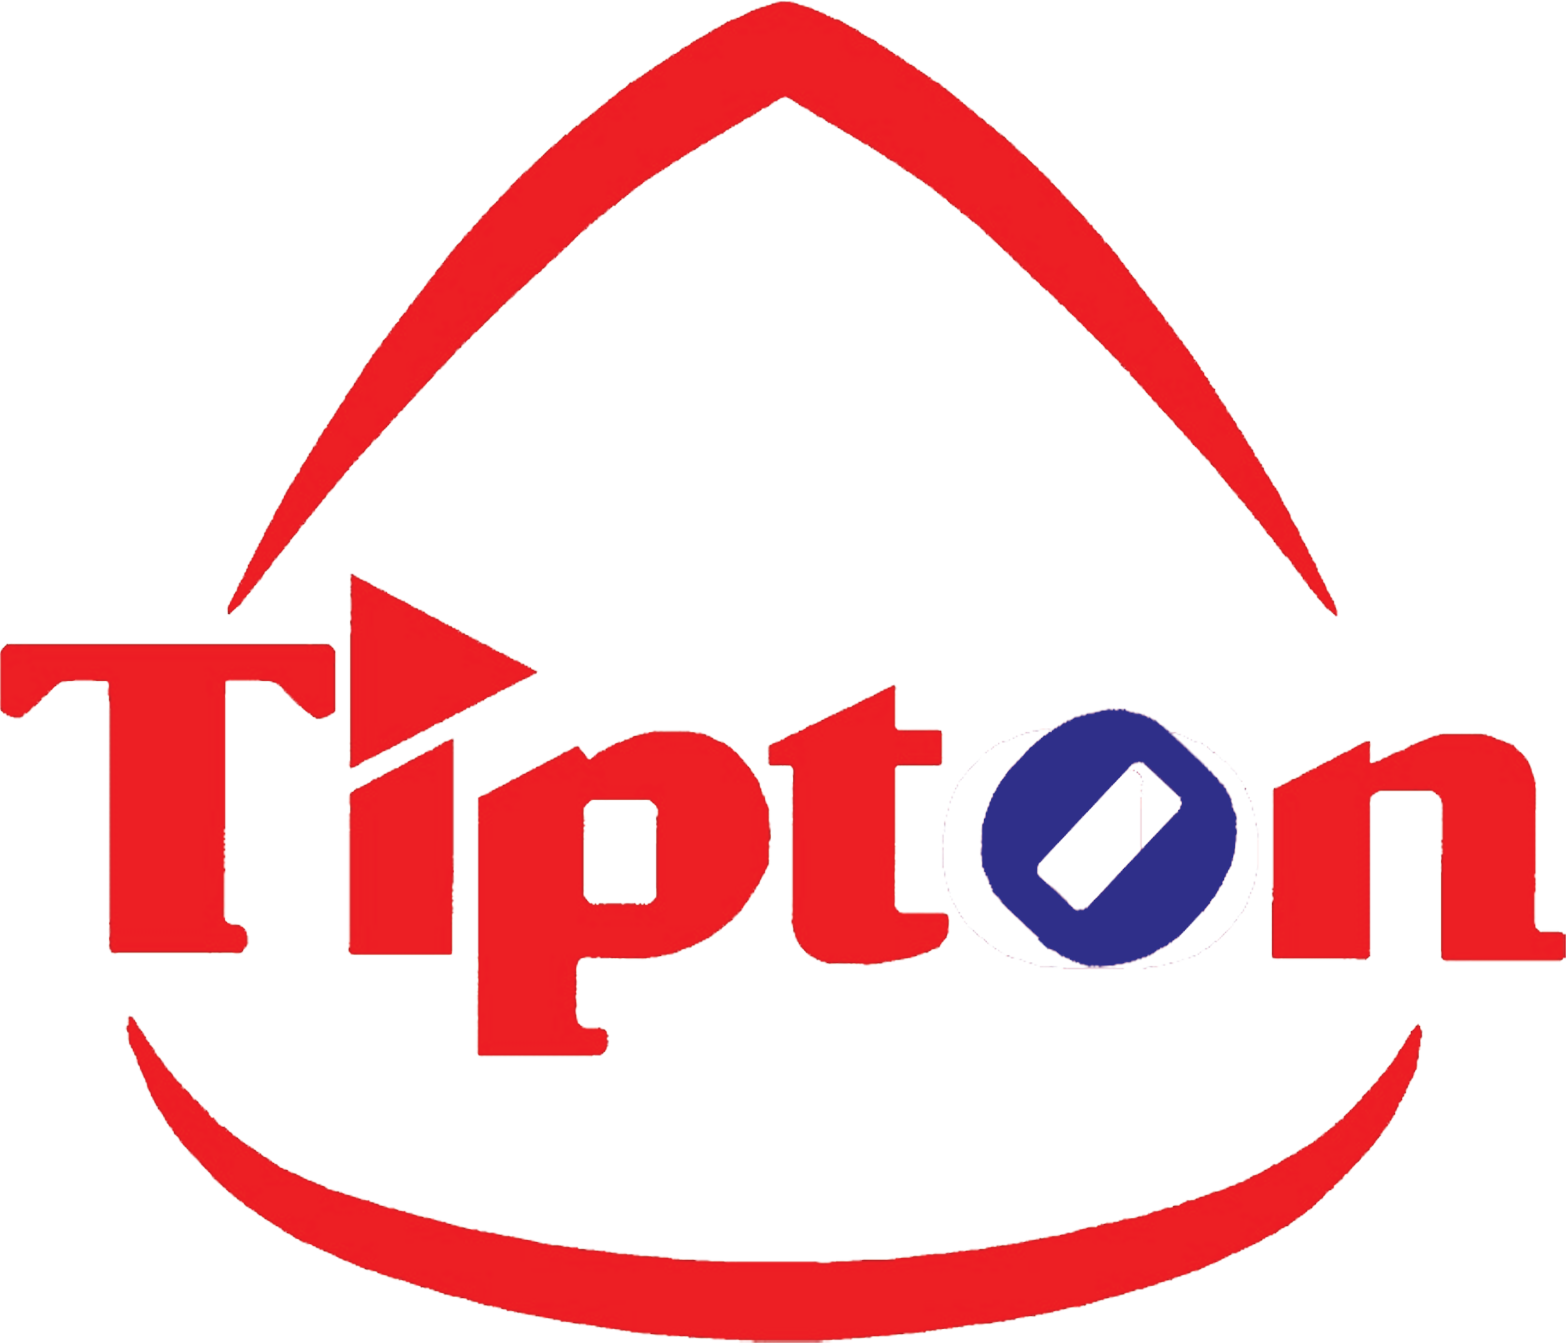 alit-Tipton